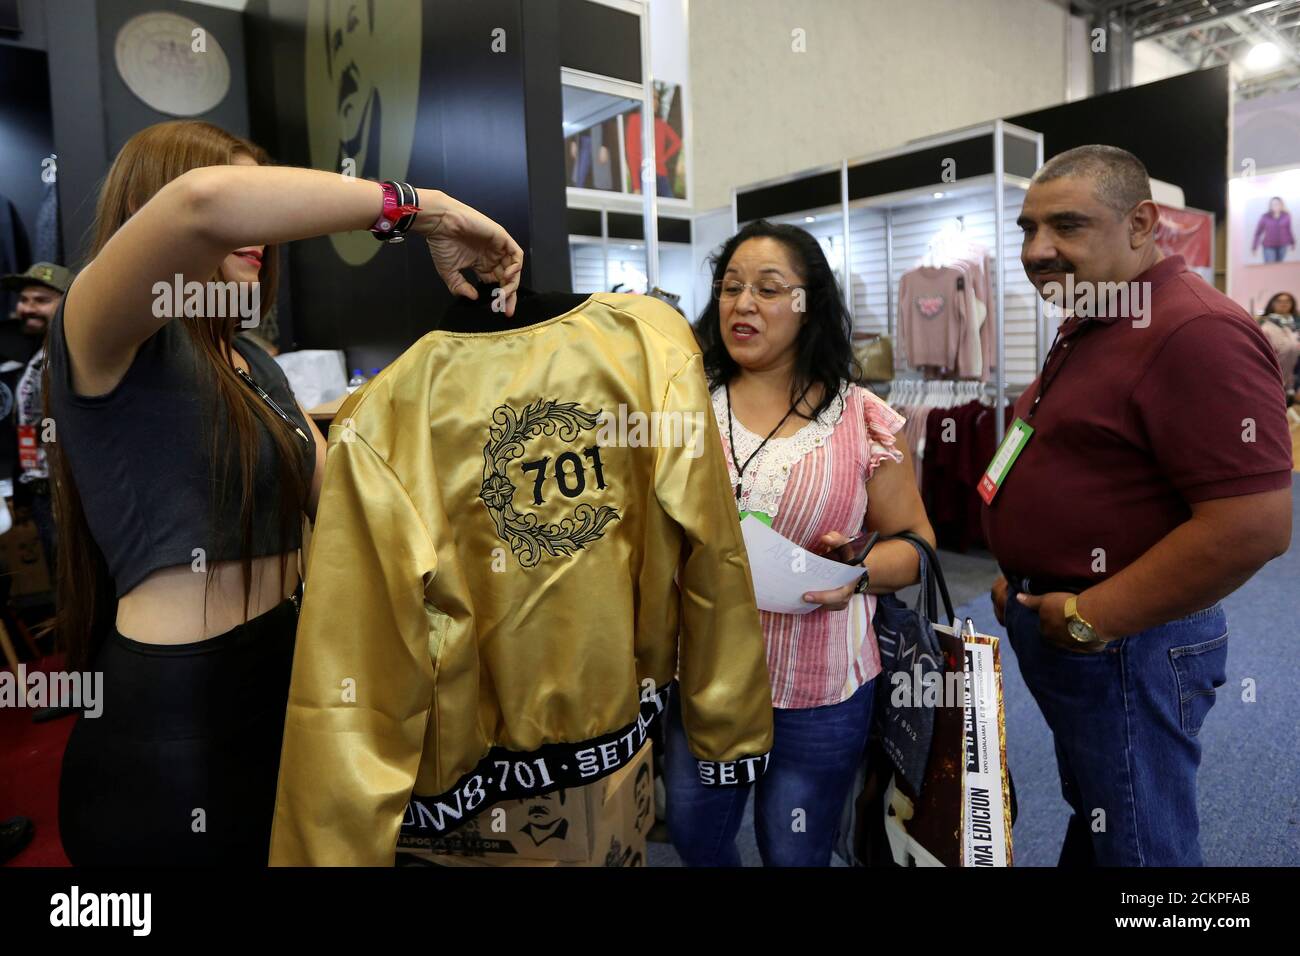 La gente mira una chaqueta en un stand de la Marca de ropa 'el Chapo 701',  propiedad de su hija Alejandrina Gisselle Guzman, en la feria Intermoda en  Guadalajara, México 16 de